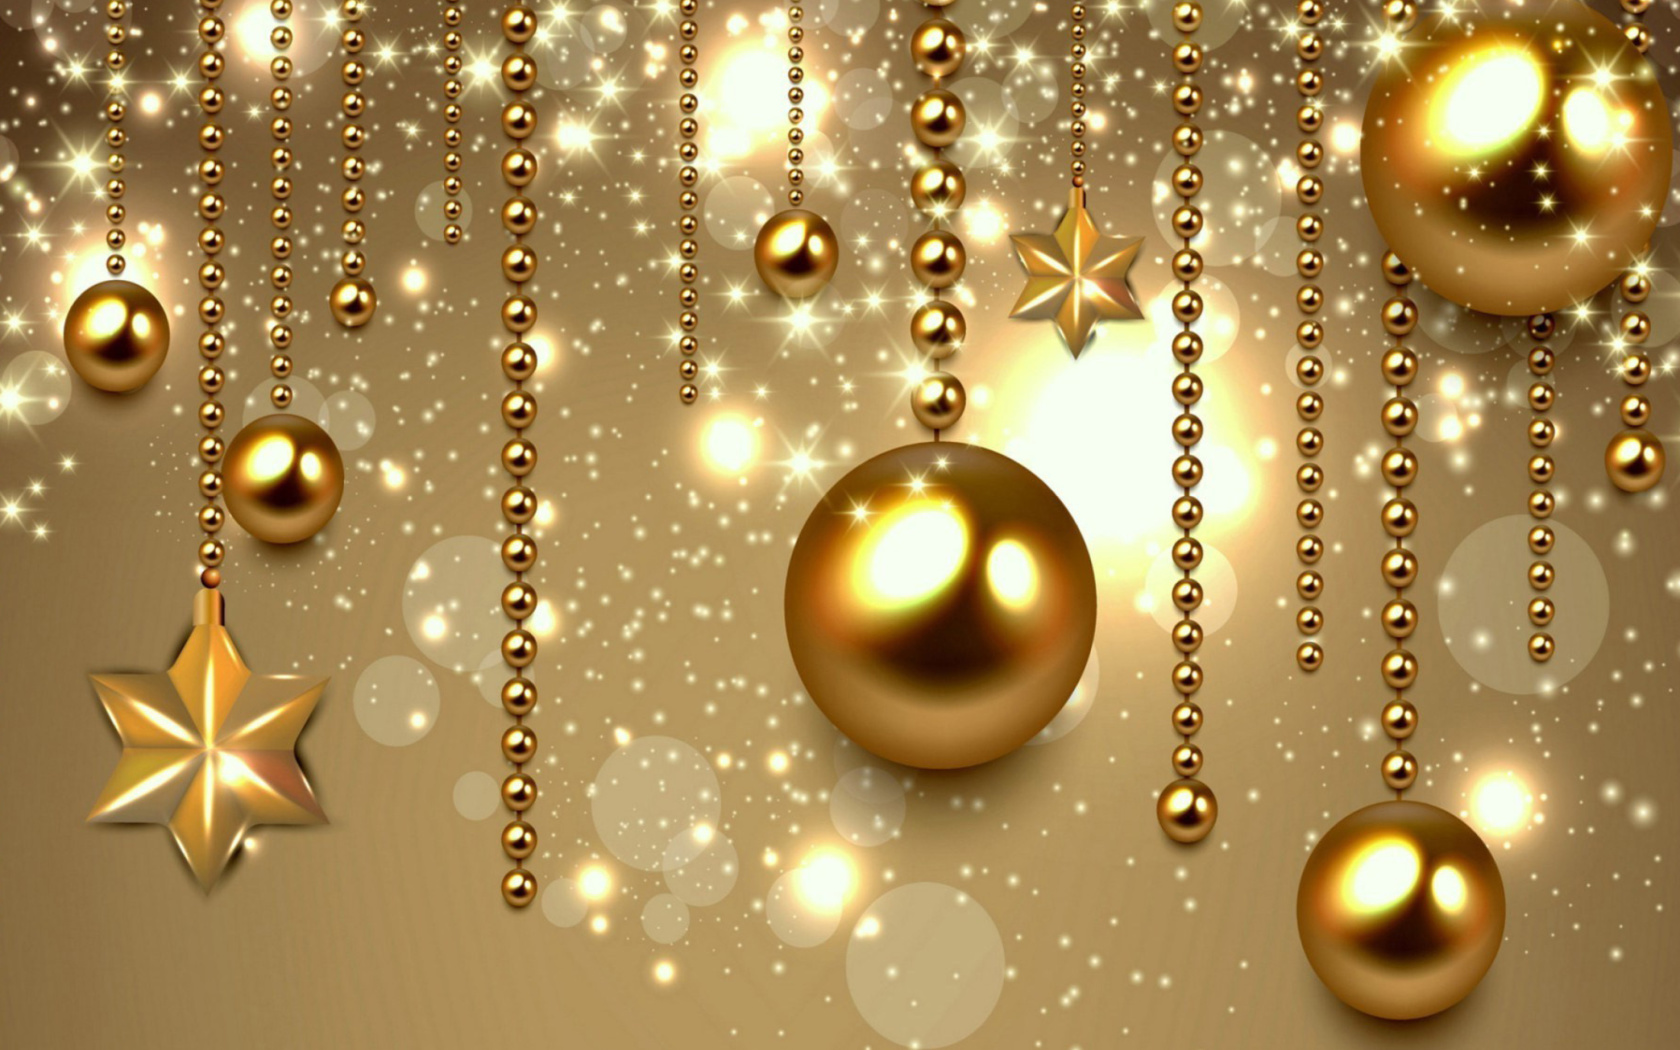 Golden Christmas Balls wallpaper 1680x1050